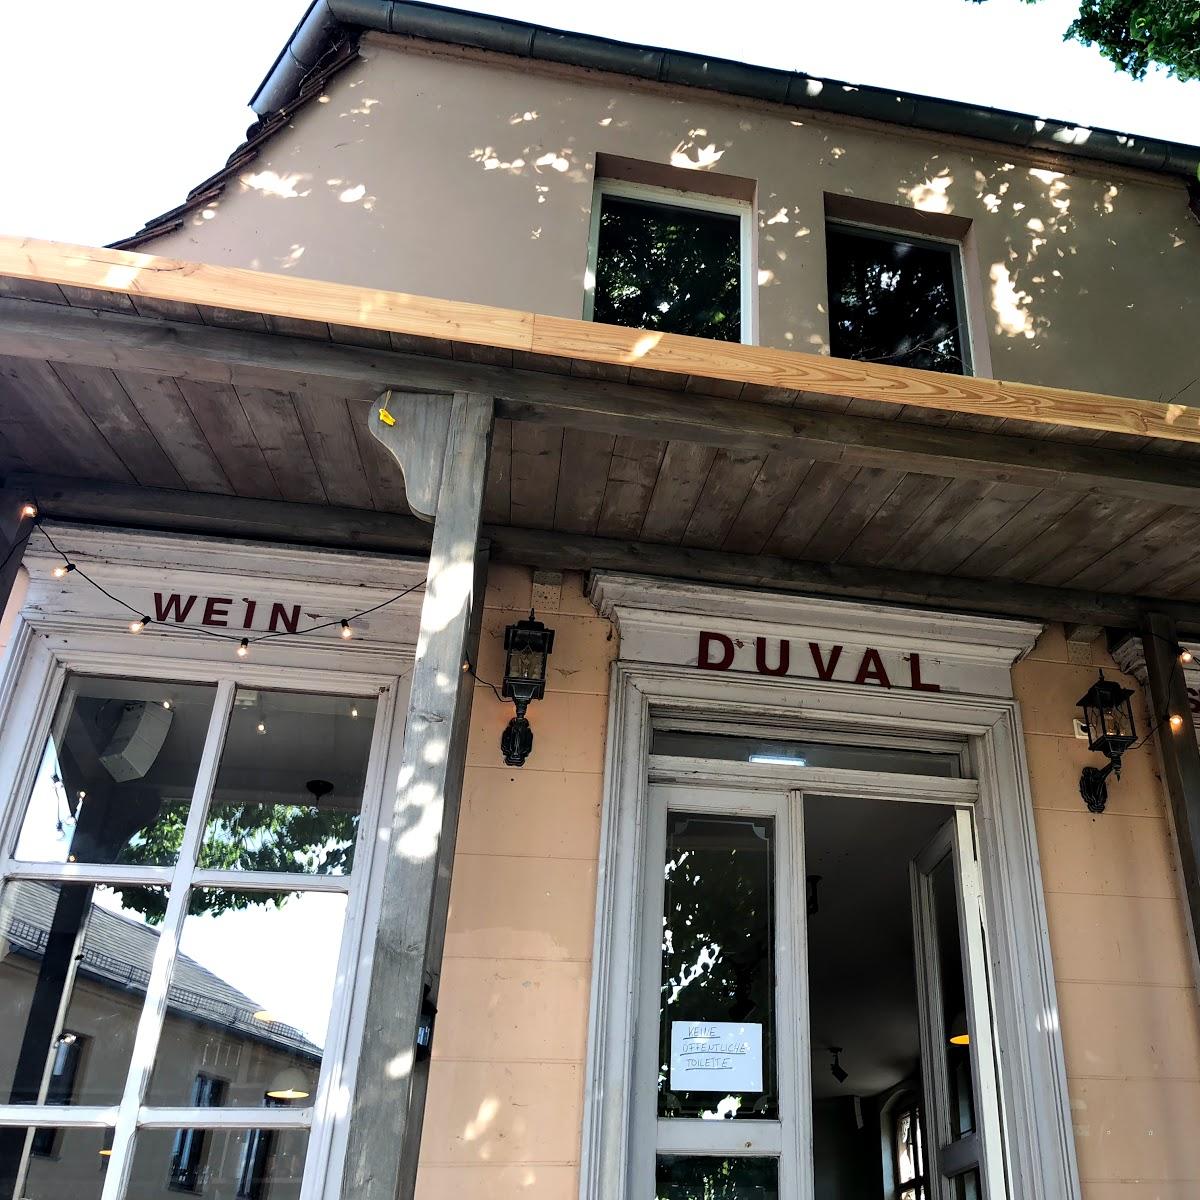 Restaurant "Duval" in Werder (Havel)